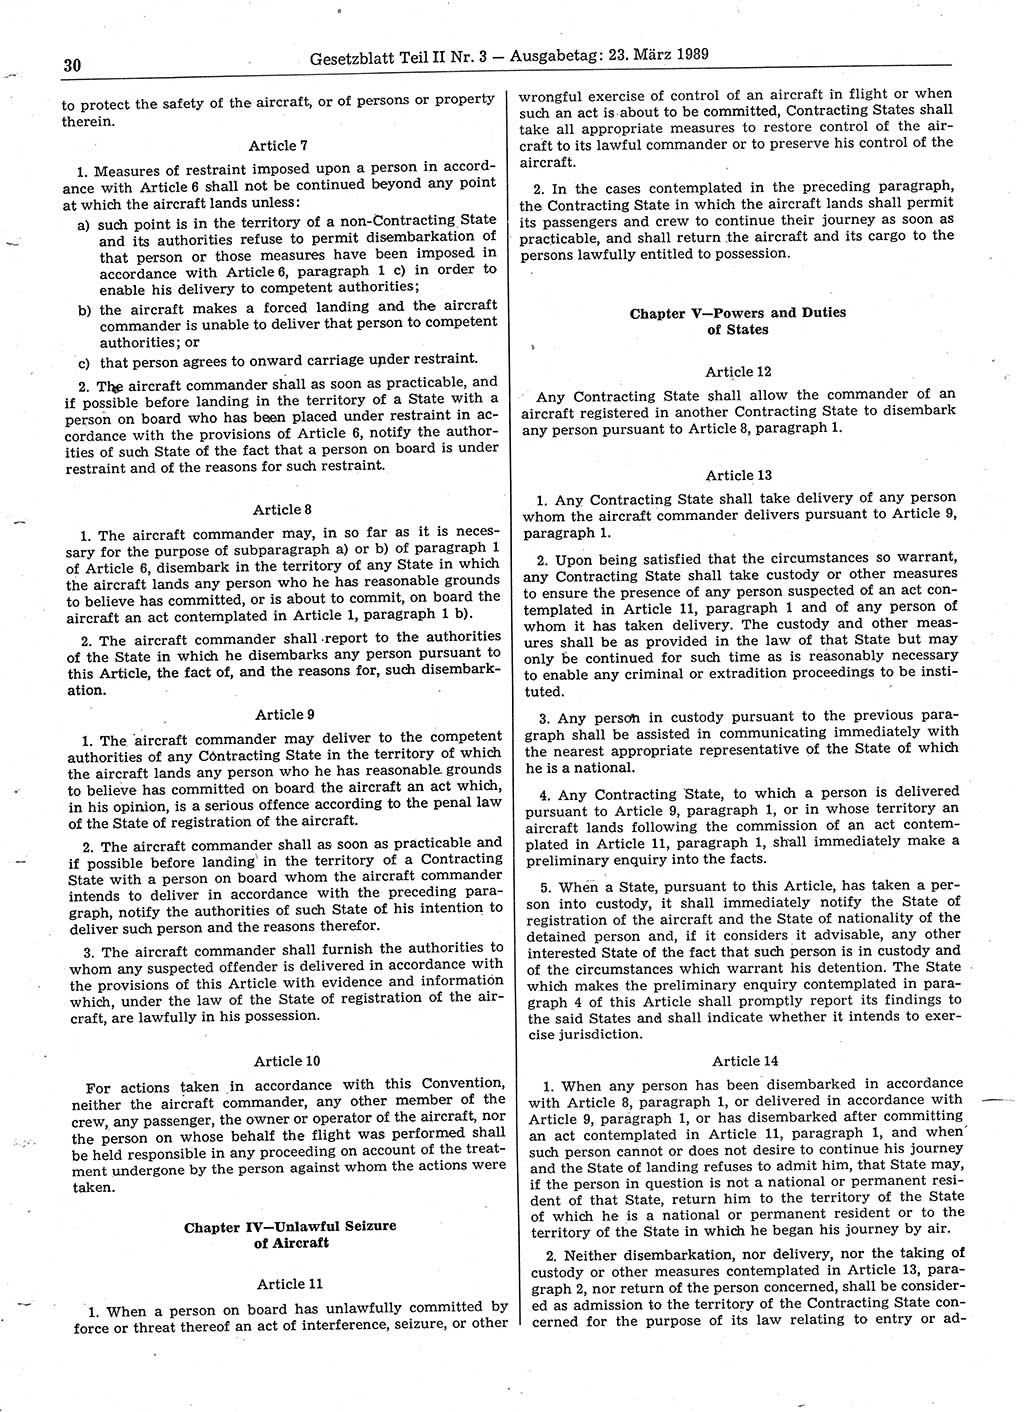 Gesetzblatt (GBl.) der Deutschen Demokratischen Republik (DDR) Teil ⅠⅠ 1989, Seite 30 (GBl. DDR ⅠⅠ 1989, S. 30)